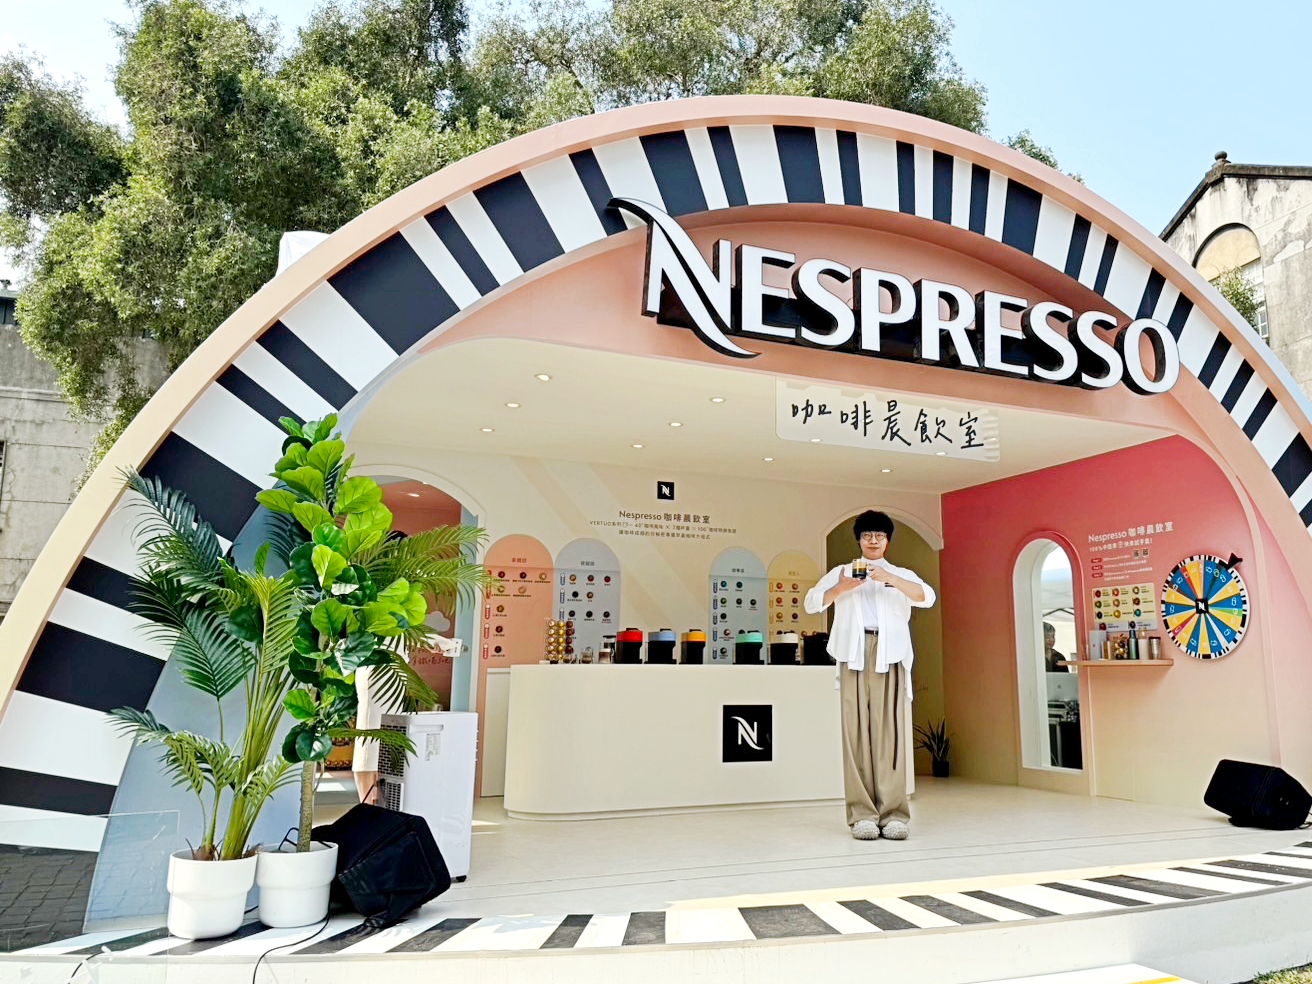 免費喝咖啡！Nespresso 公布「咖啡膠囊喜愛風味」台韓排行榜　「咖啡晨飲室」快閃華山